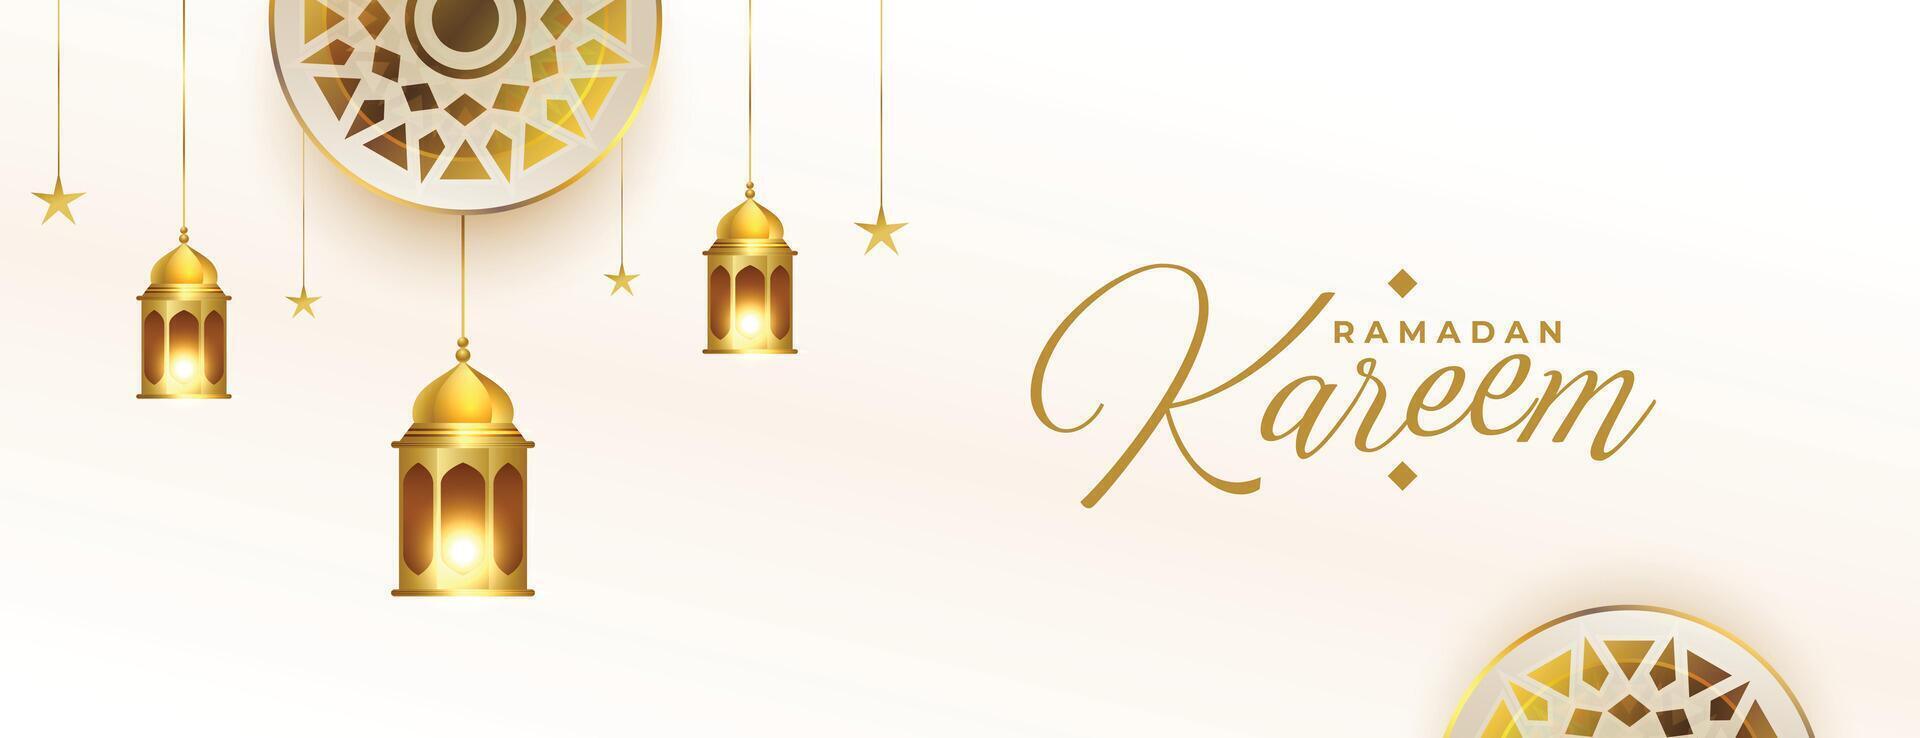 vredig Ramadan wensen banier met gouden lantaarns en Islamitisch decoratie vector